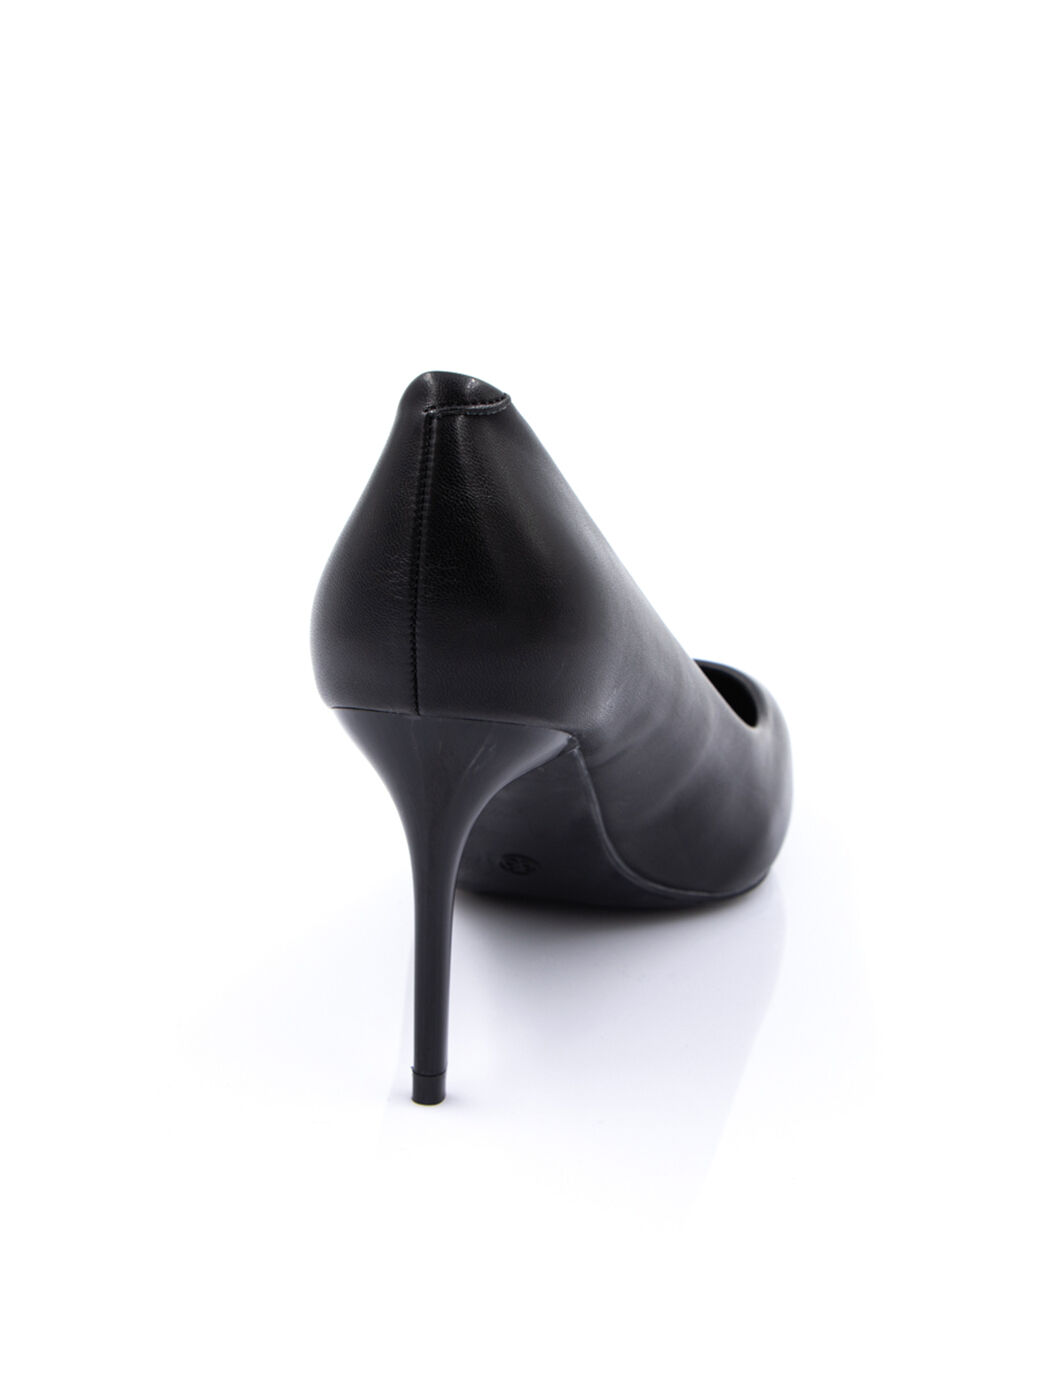 Туфли женские черные экокожа каблук шпилька демисезон от производителя IM вид 1